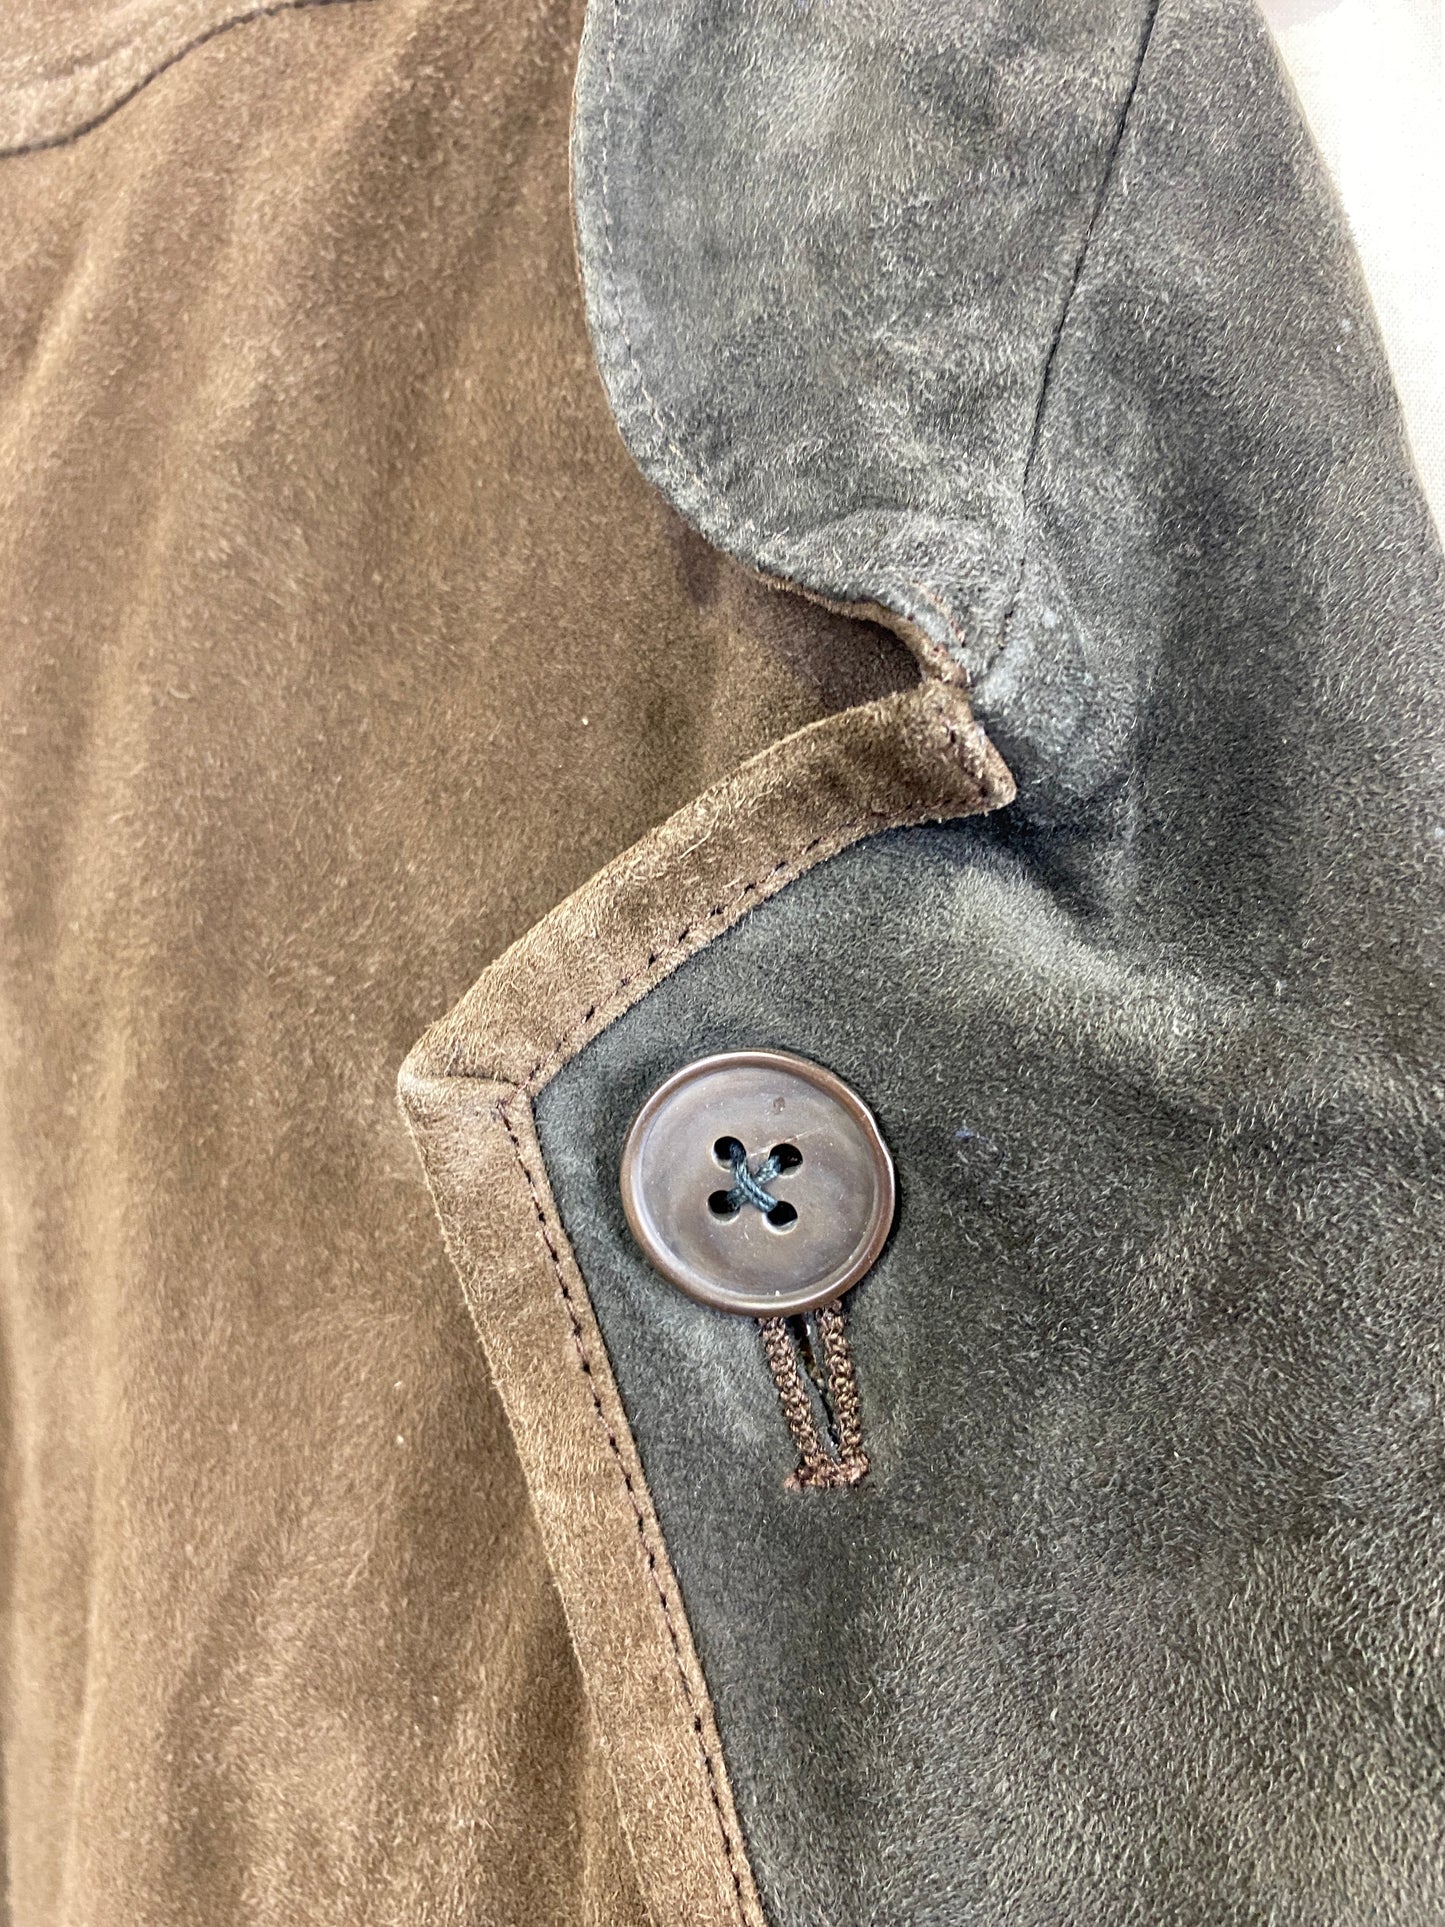 1990s Men's Brown Suede Blazer, Button Back Lapels, Casa Veneta Leather Jacket, C44